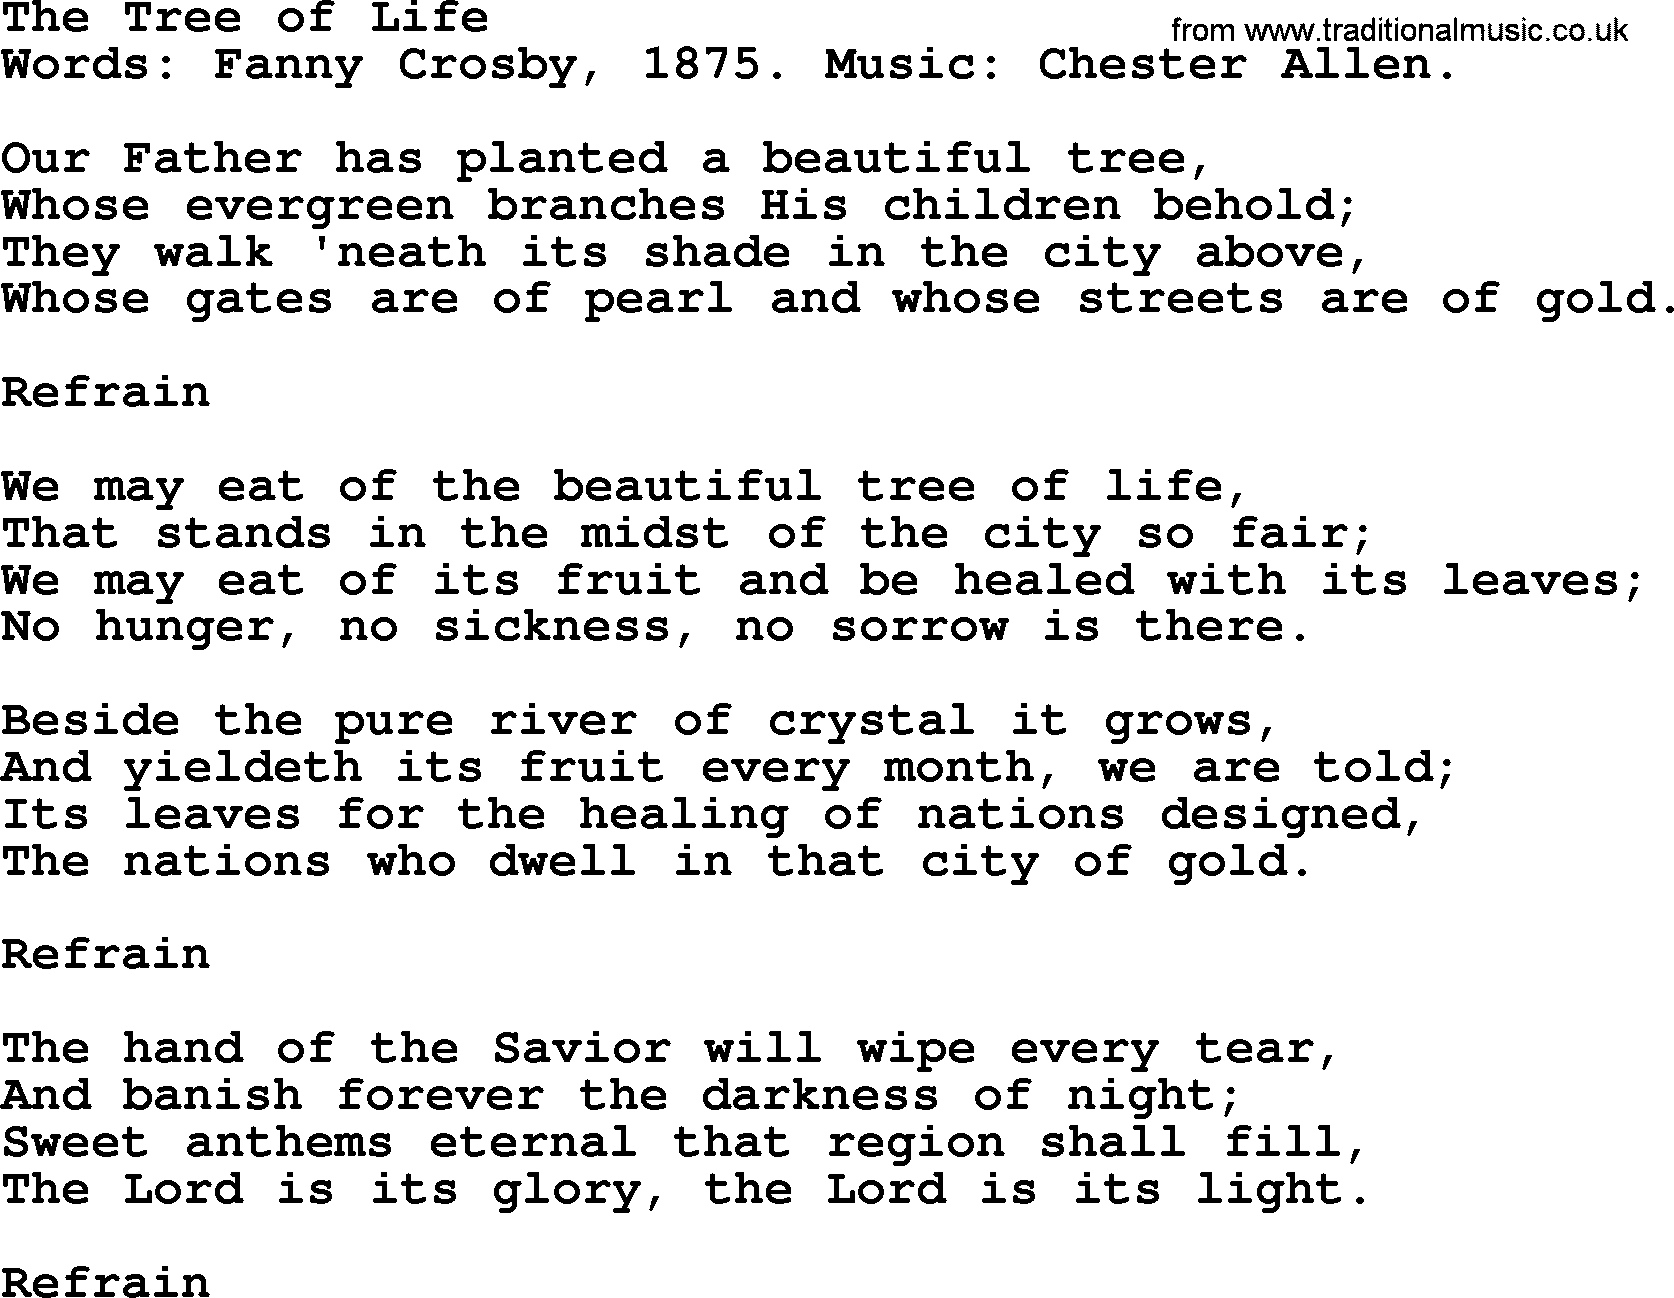 Fanny Crosby song: The Tree Of Life, lyrics